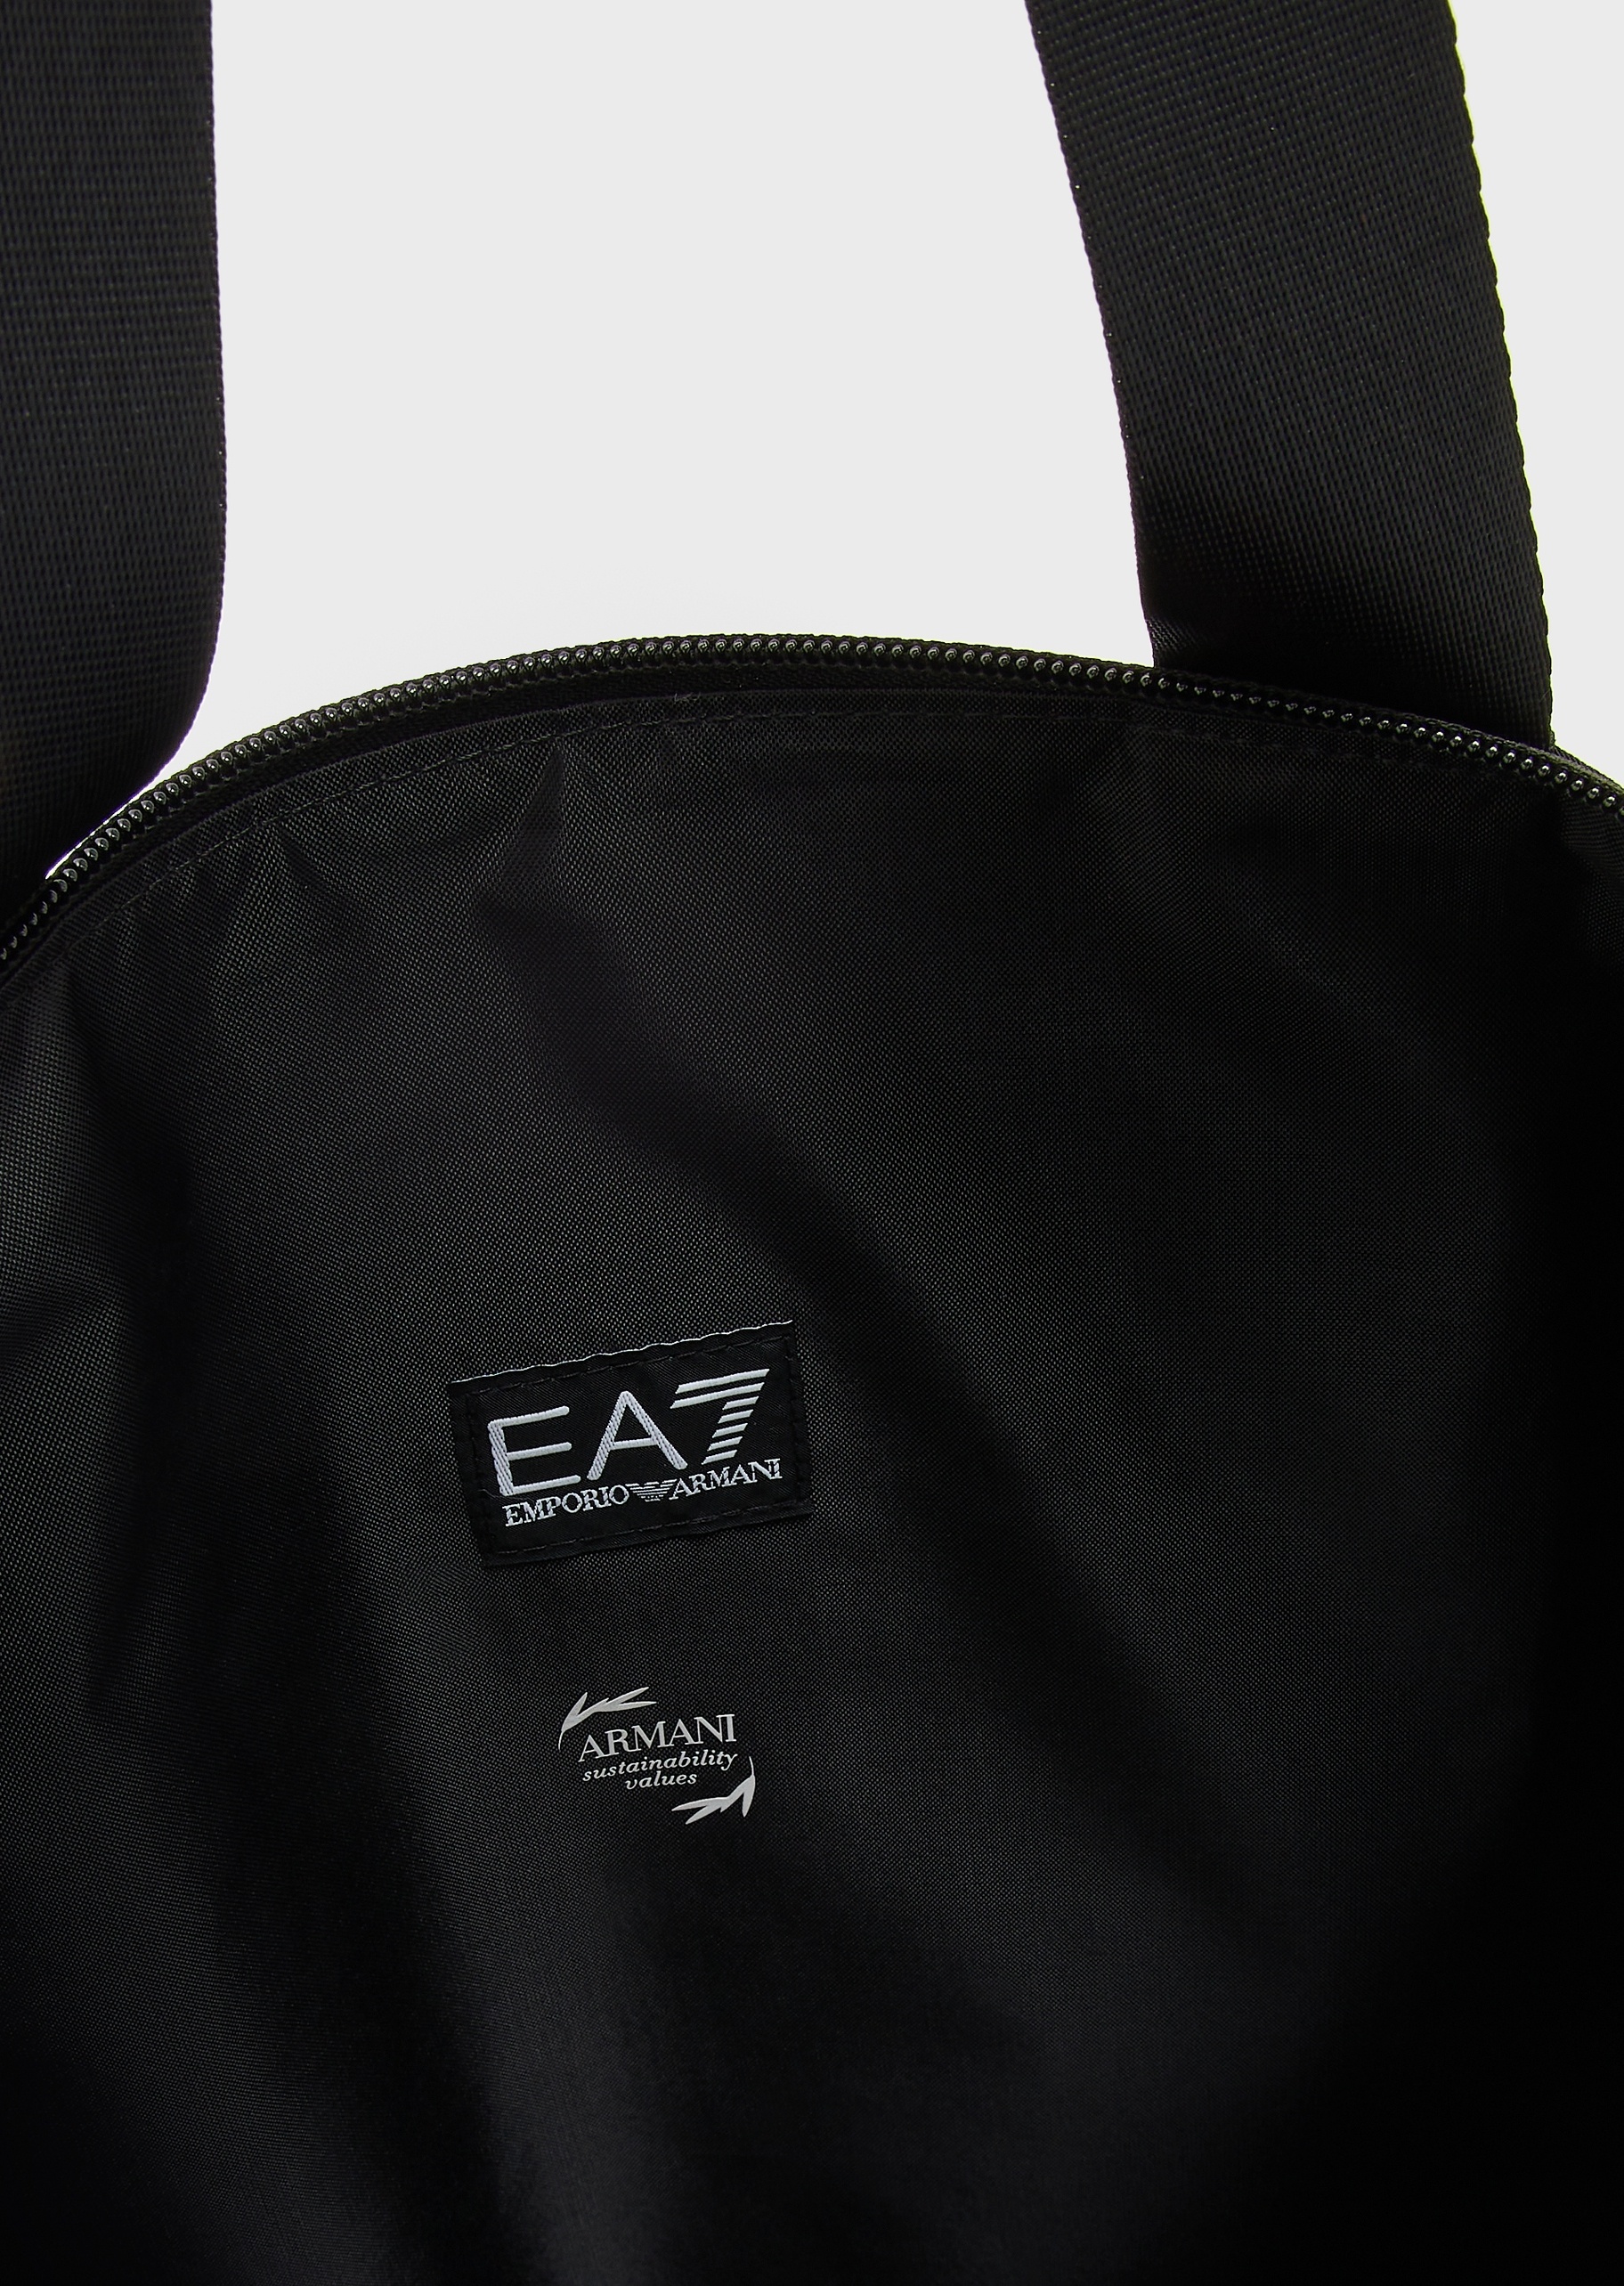 EA7 女士扁平饰带运动托特包